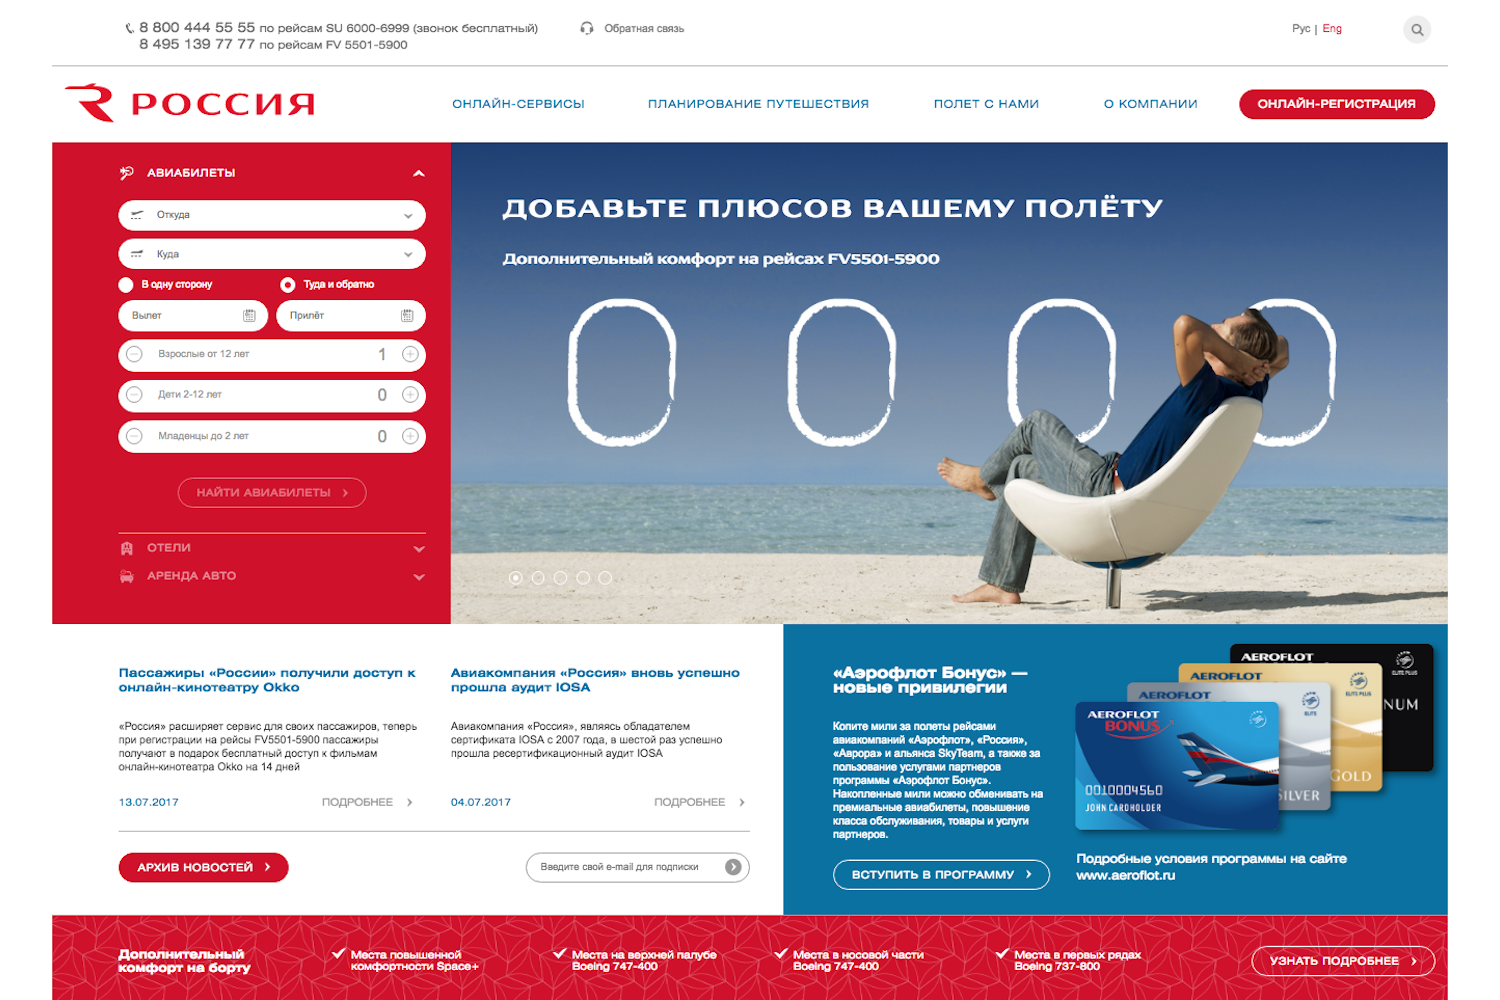 Сайт авиакомпании «Россия»: смотреть в портфолио
